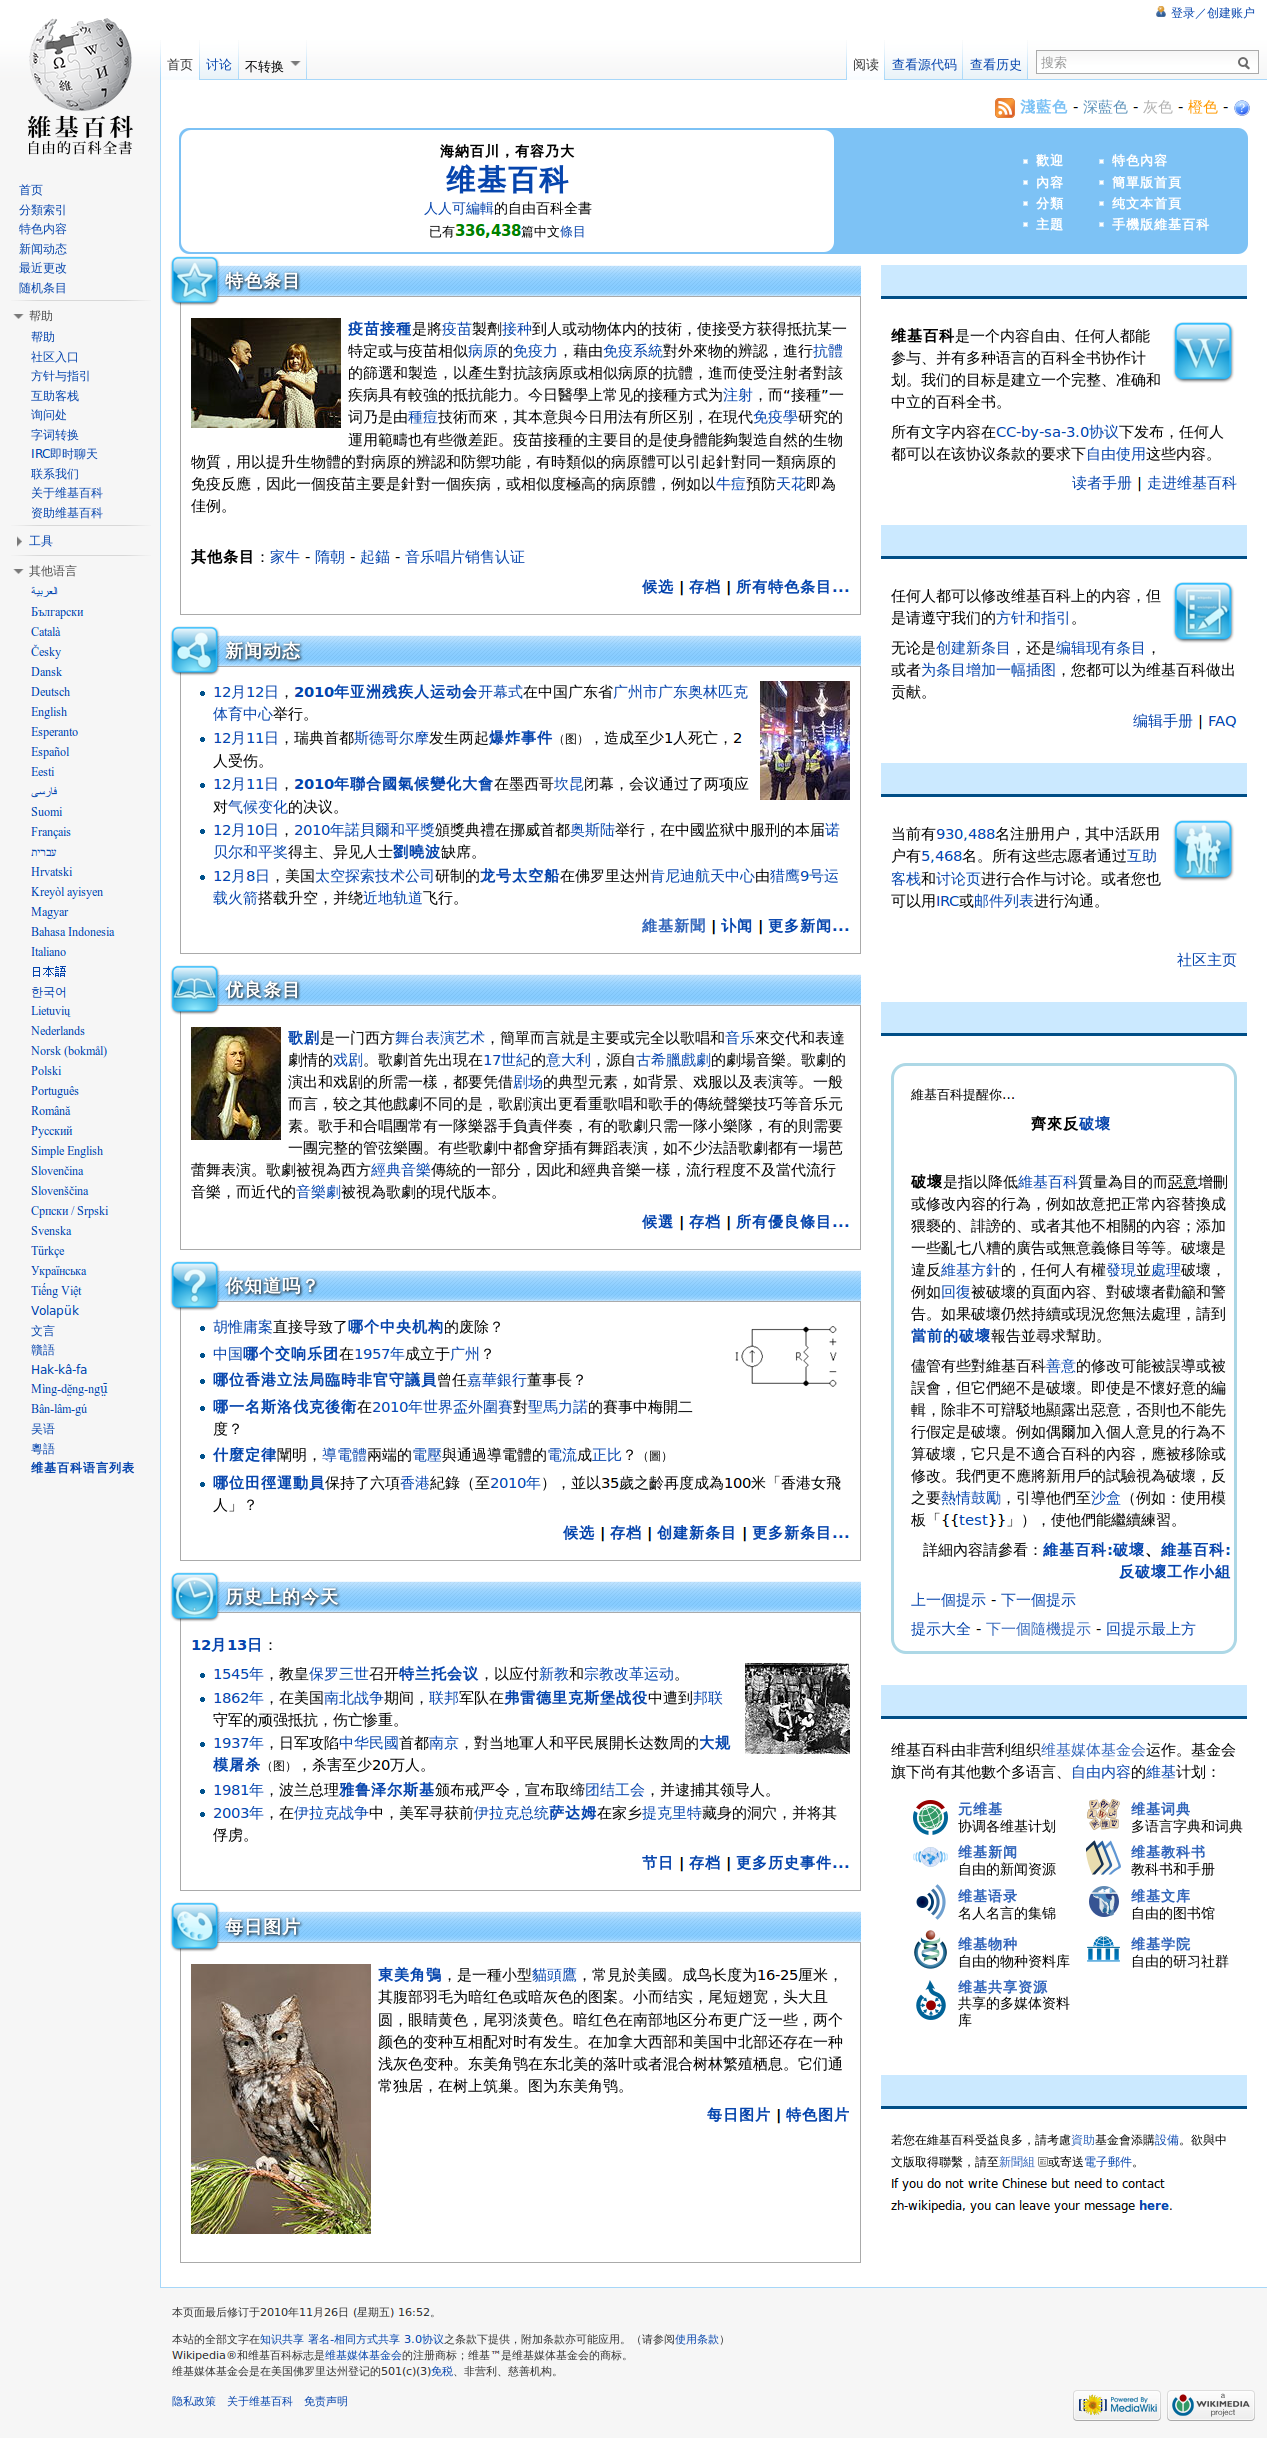 Chinese Wikipedia's Main Page screenshot zh.png